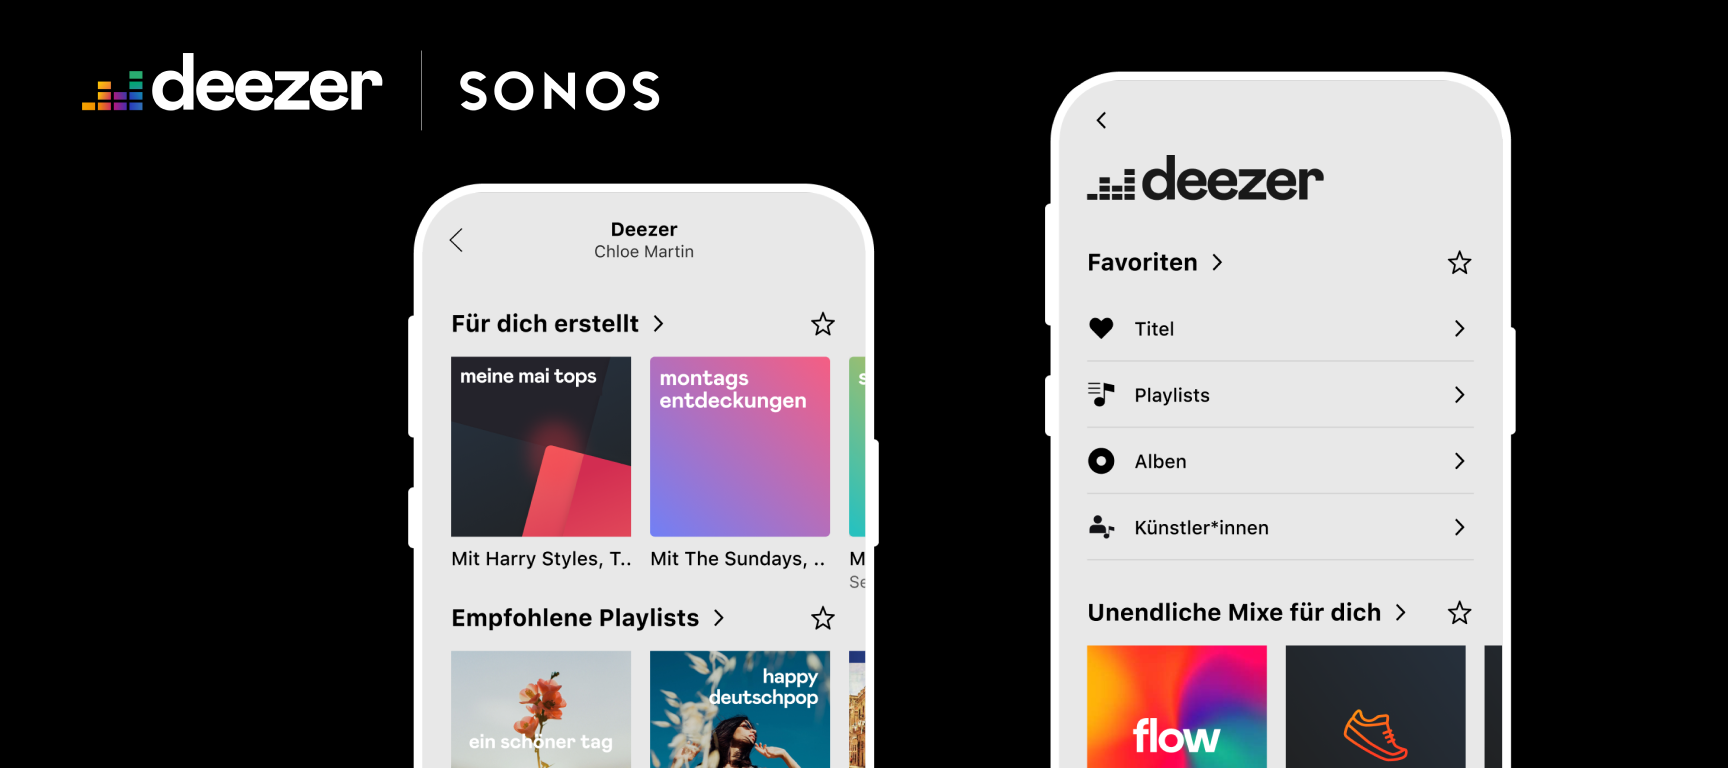 News from Deezer on Sonos — Neues Design und Sonos Voice Control